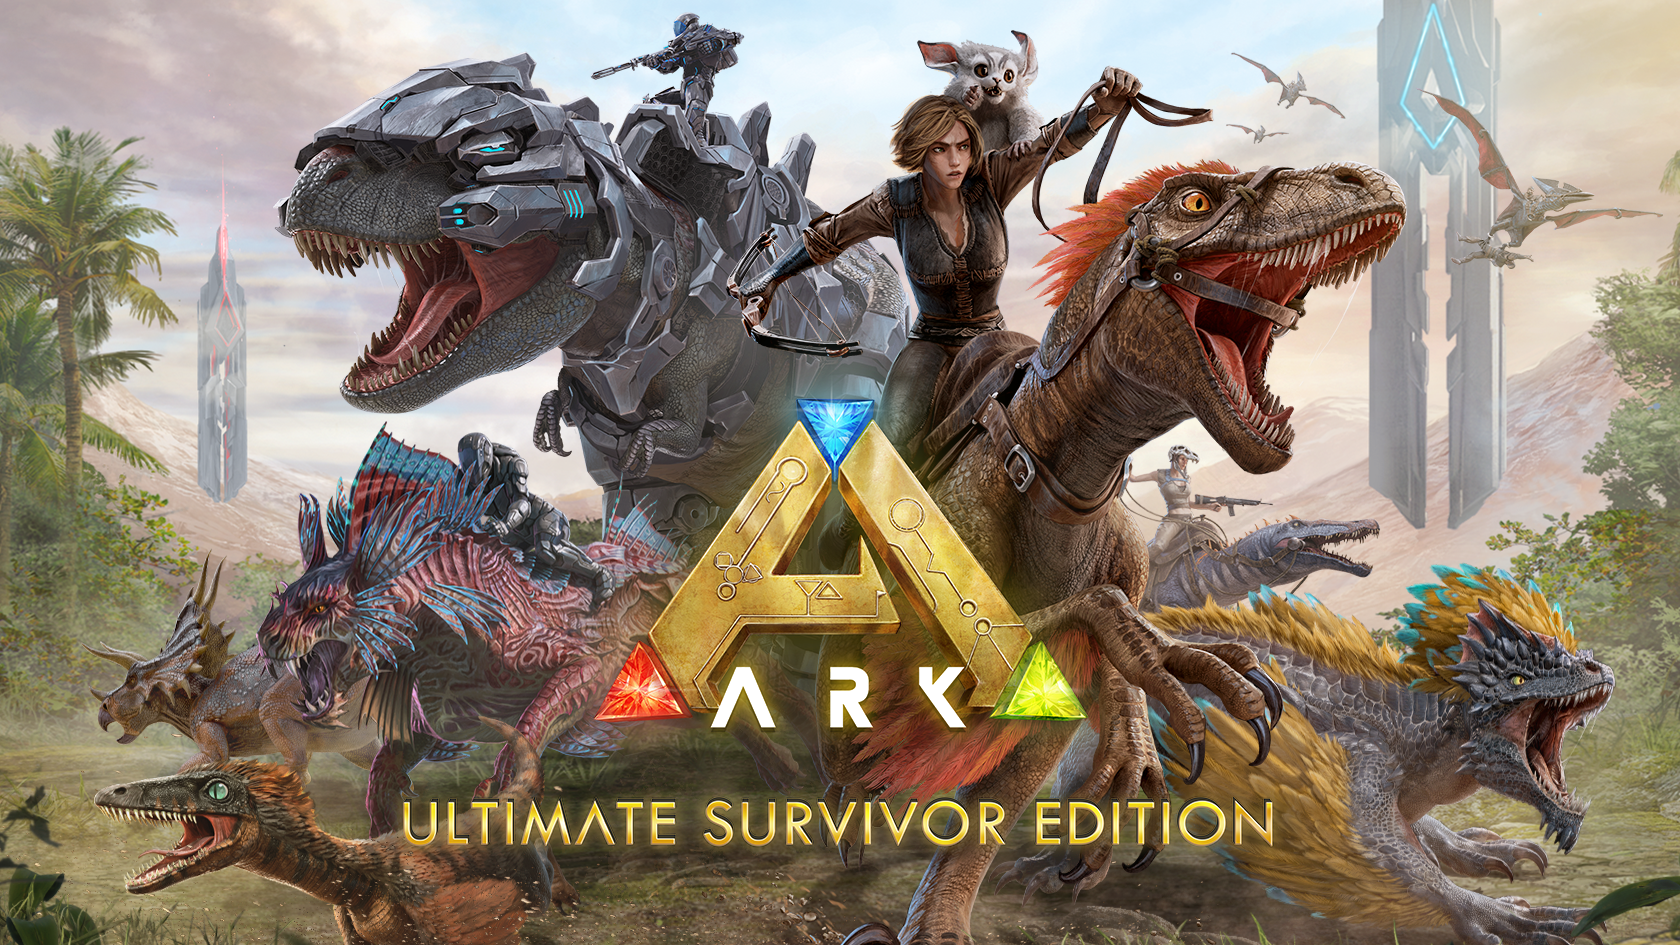 Ark II Leaked Gameplay : r/ARK